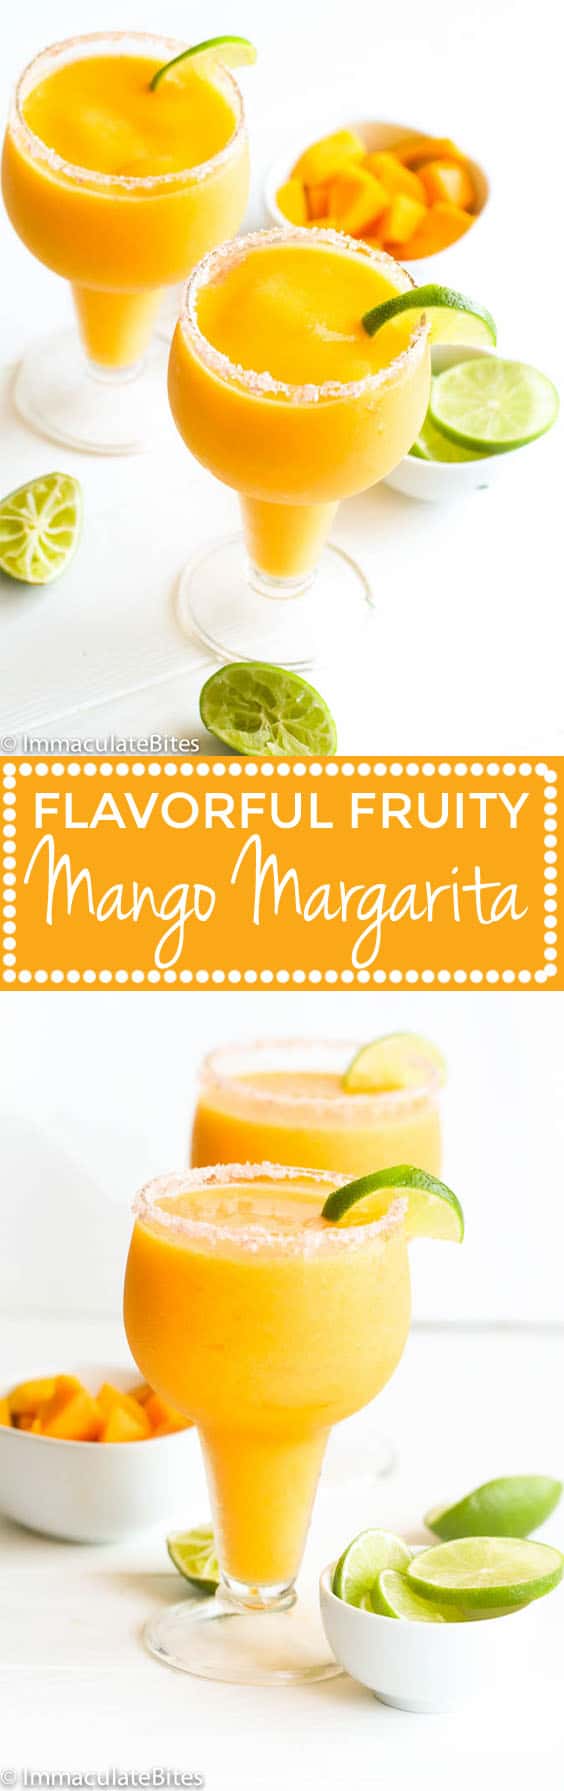 mango margarita